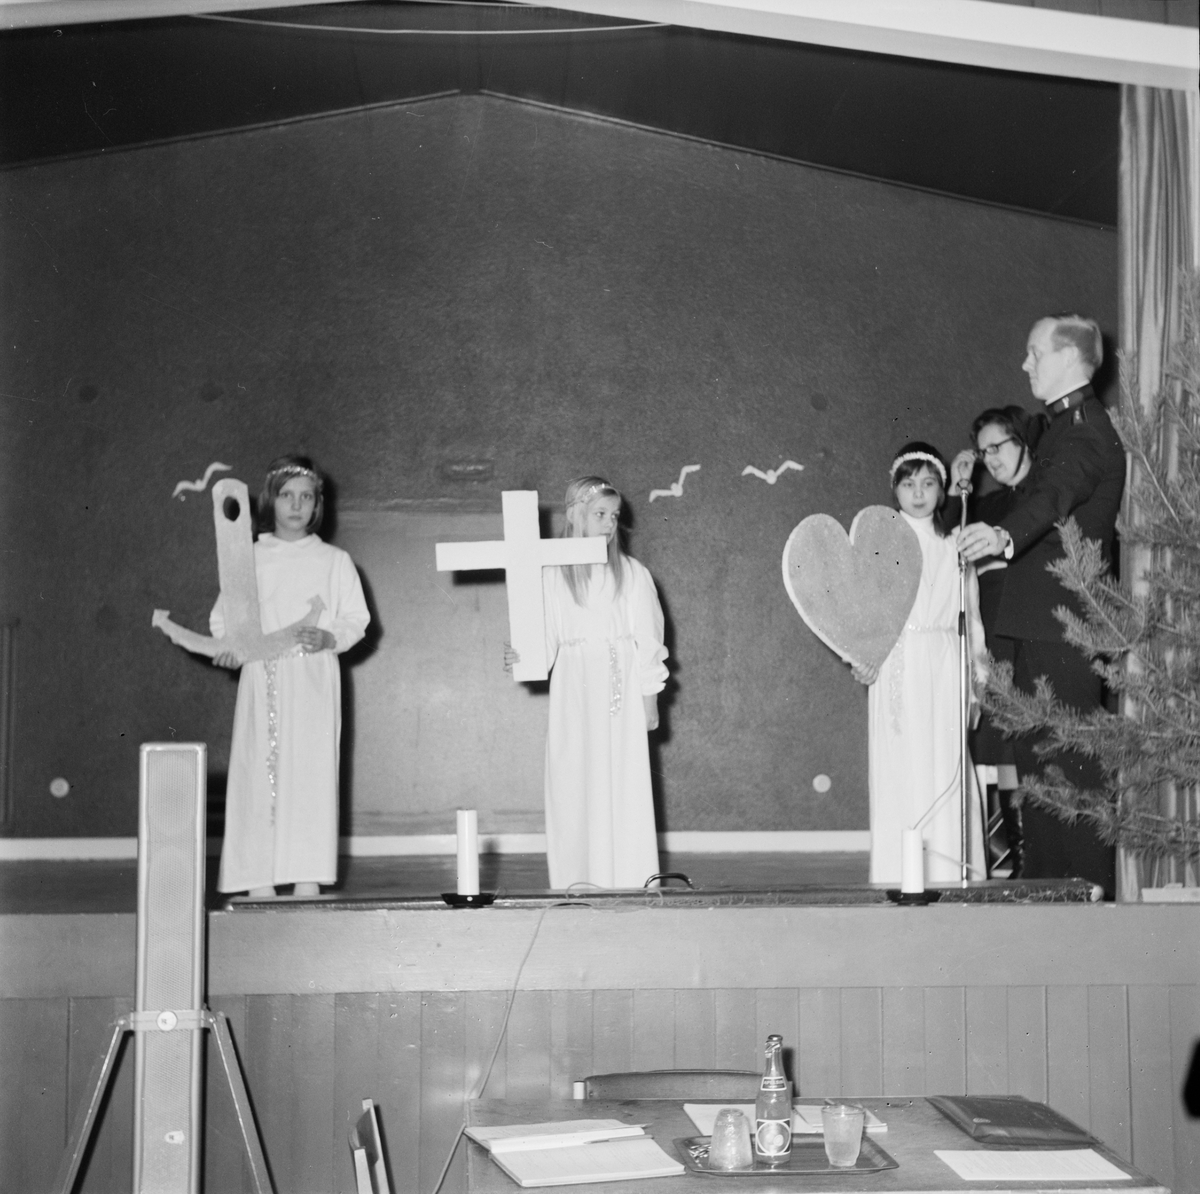 Frälsningsarméns luciafirande, Tierp, Uppland, december 1971